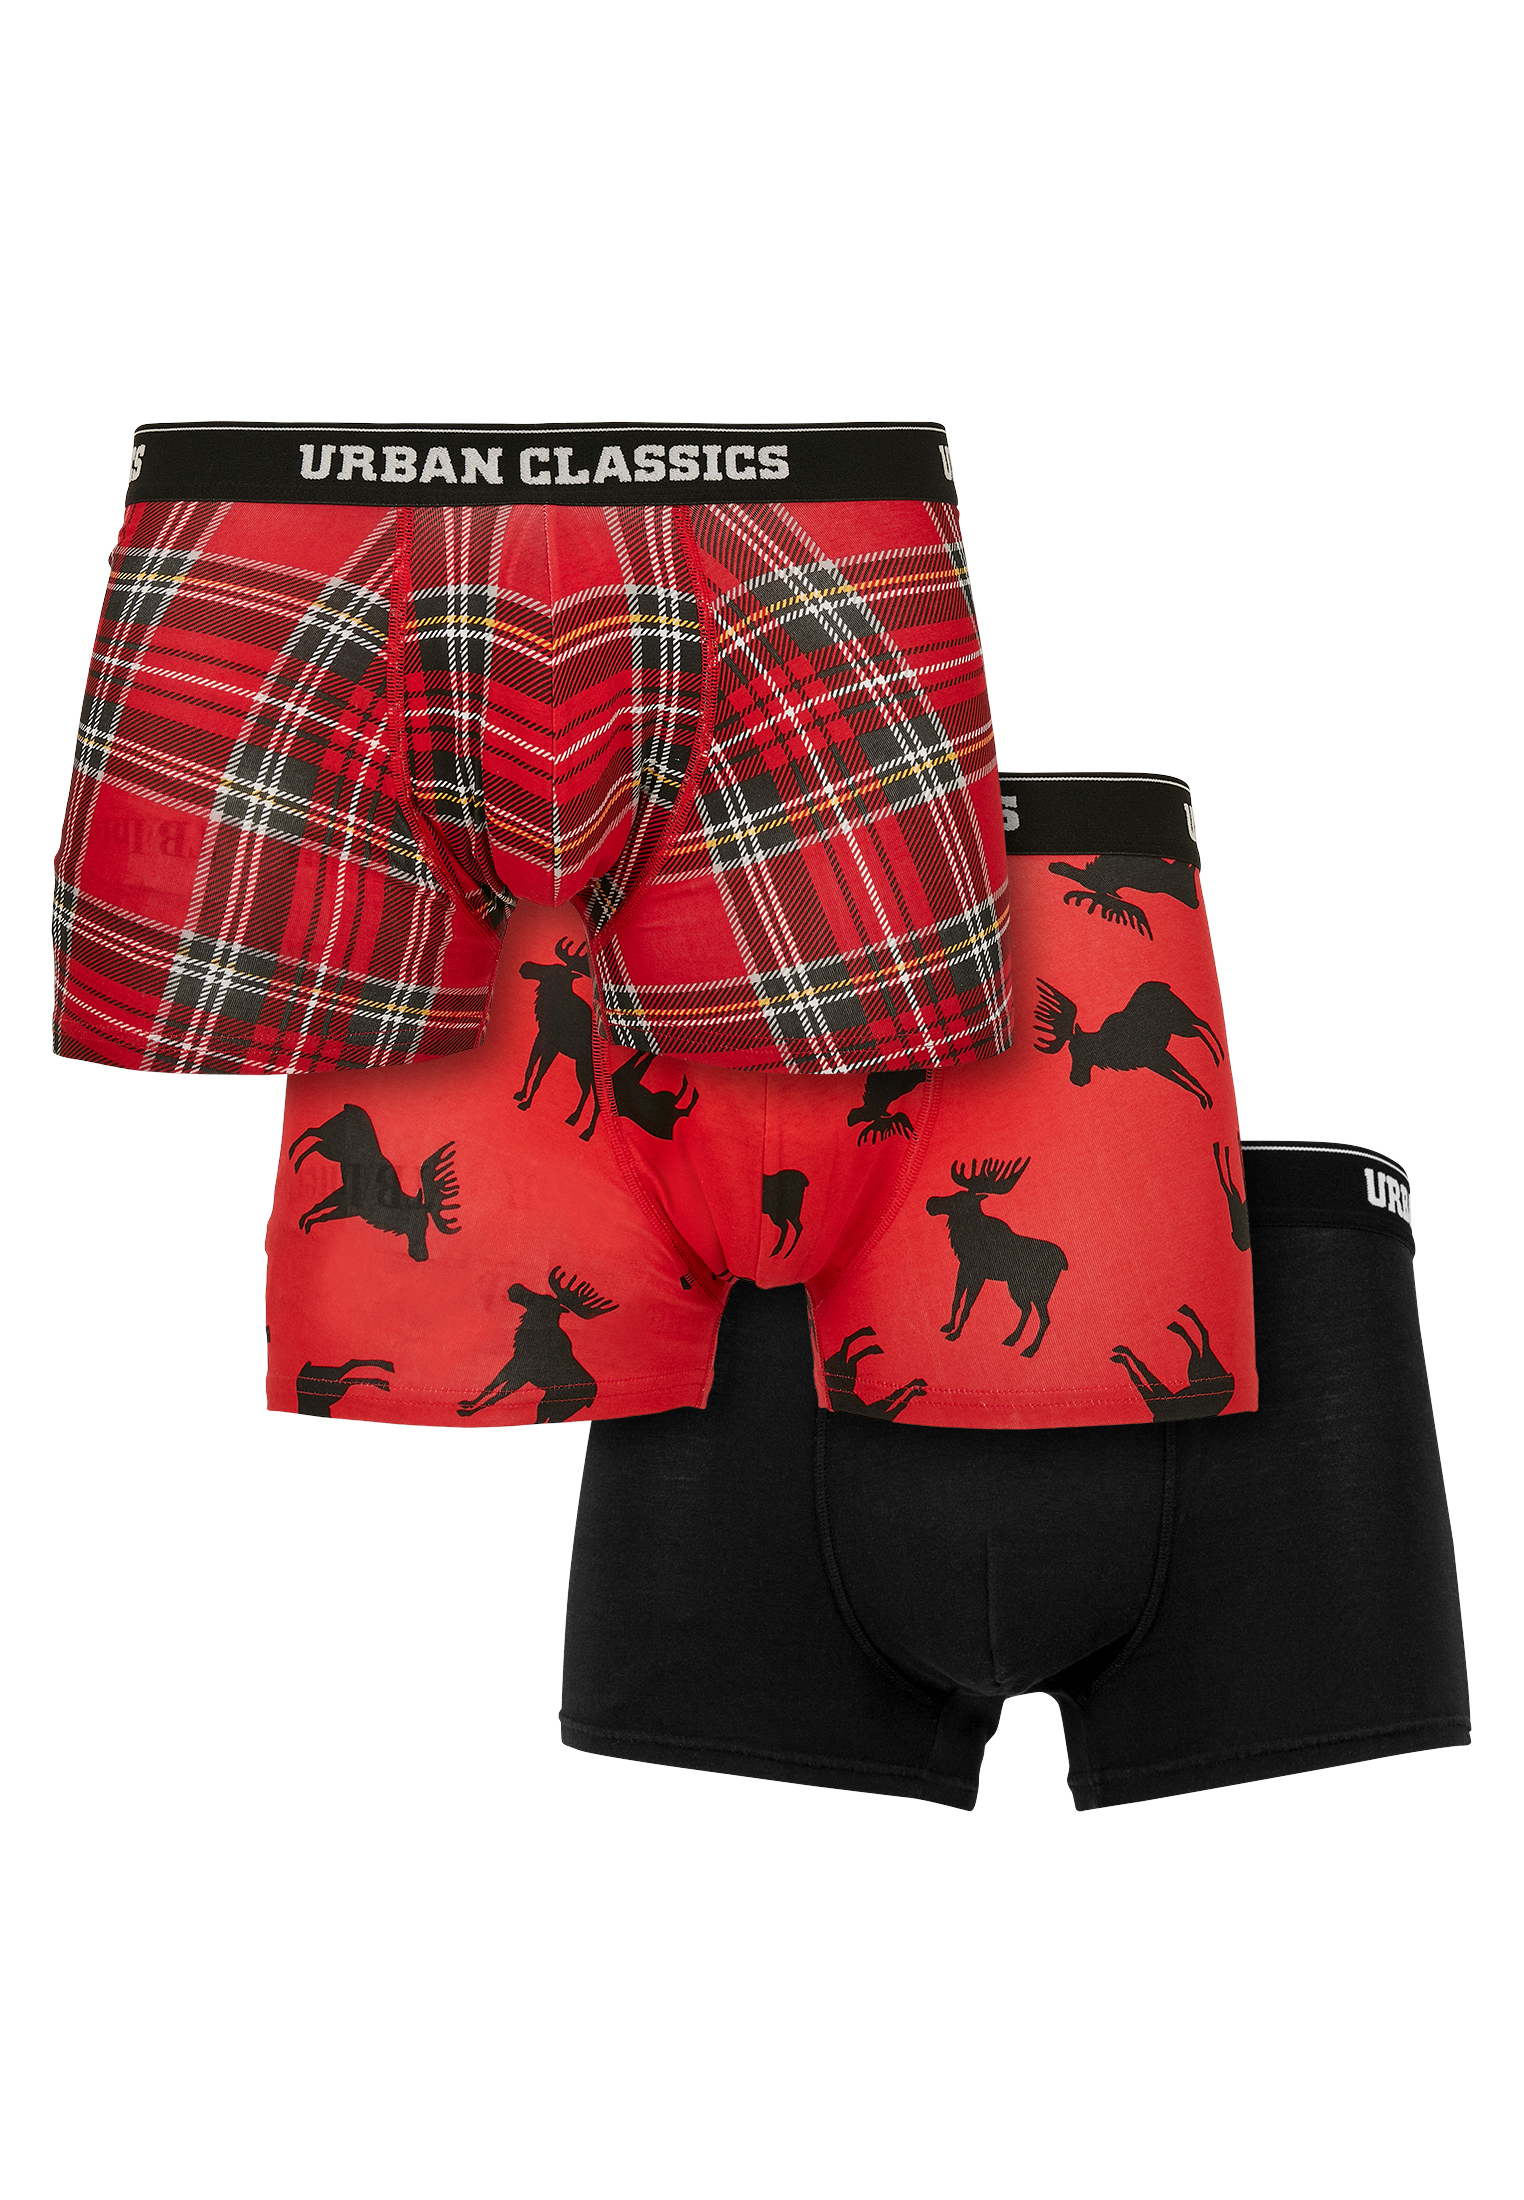 Боксеры Urban Classics Boxershorts, цвет red plaid aop+moose aop+blk timberland aop camo